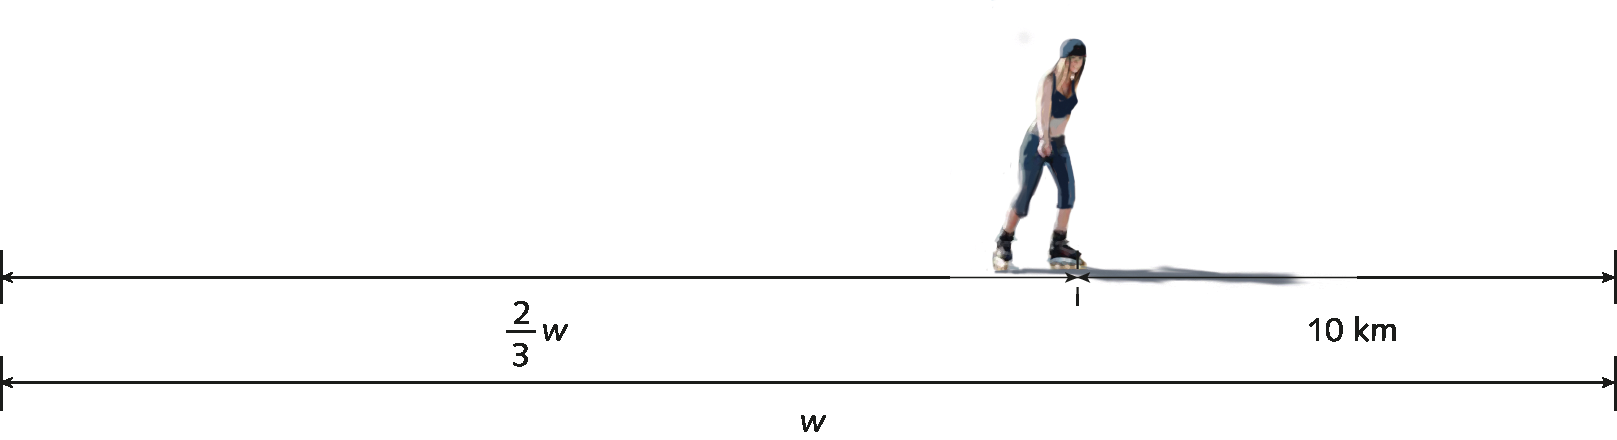 Ilustração. Duas Retas horizontais com medida total  W
Na primeira reta, à esquerda, há uma indicação na fração de 2 terços de W e em 10 quilômetros. Acima, na outra reta horizontal, uma mulher está patinando e em sua posição há um tracinho, próximo à marca de 10 quilômetros